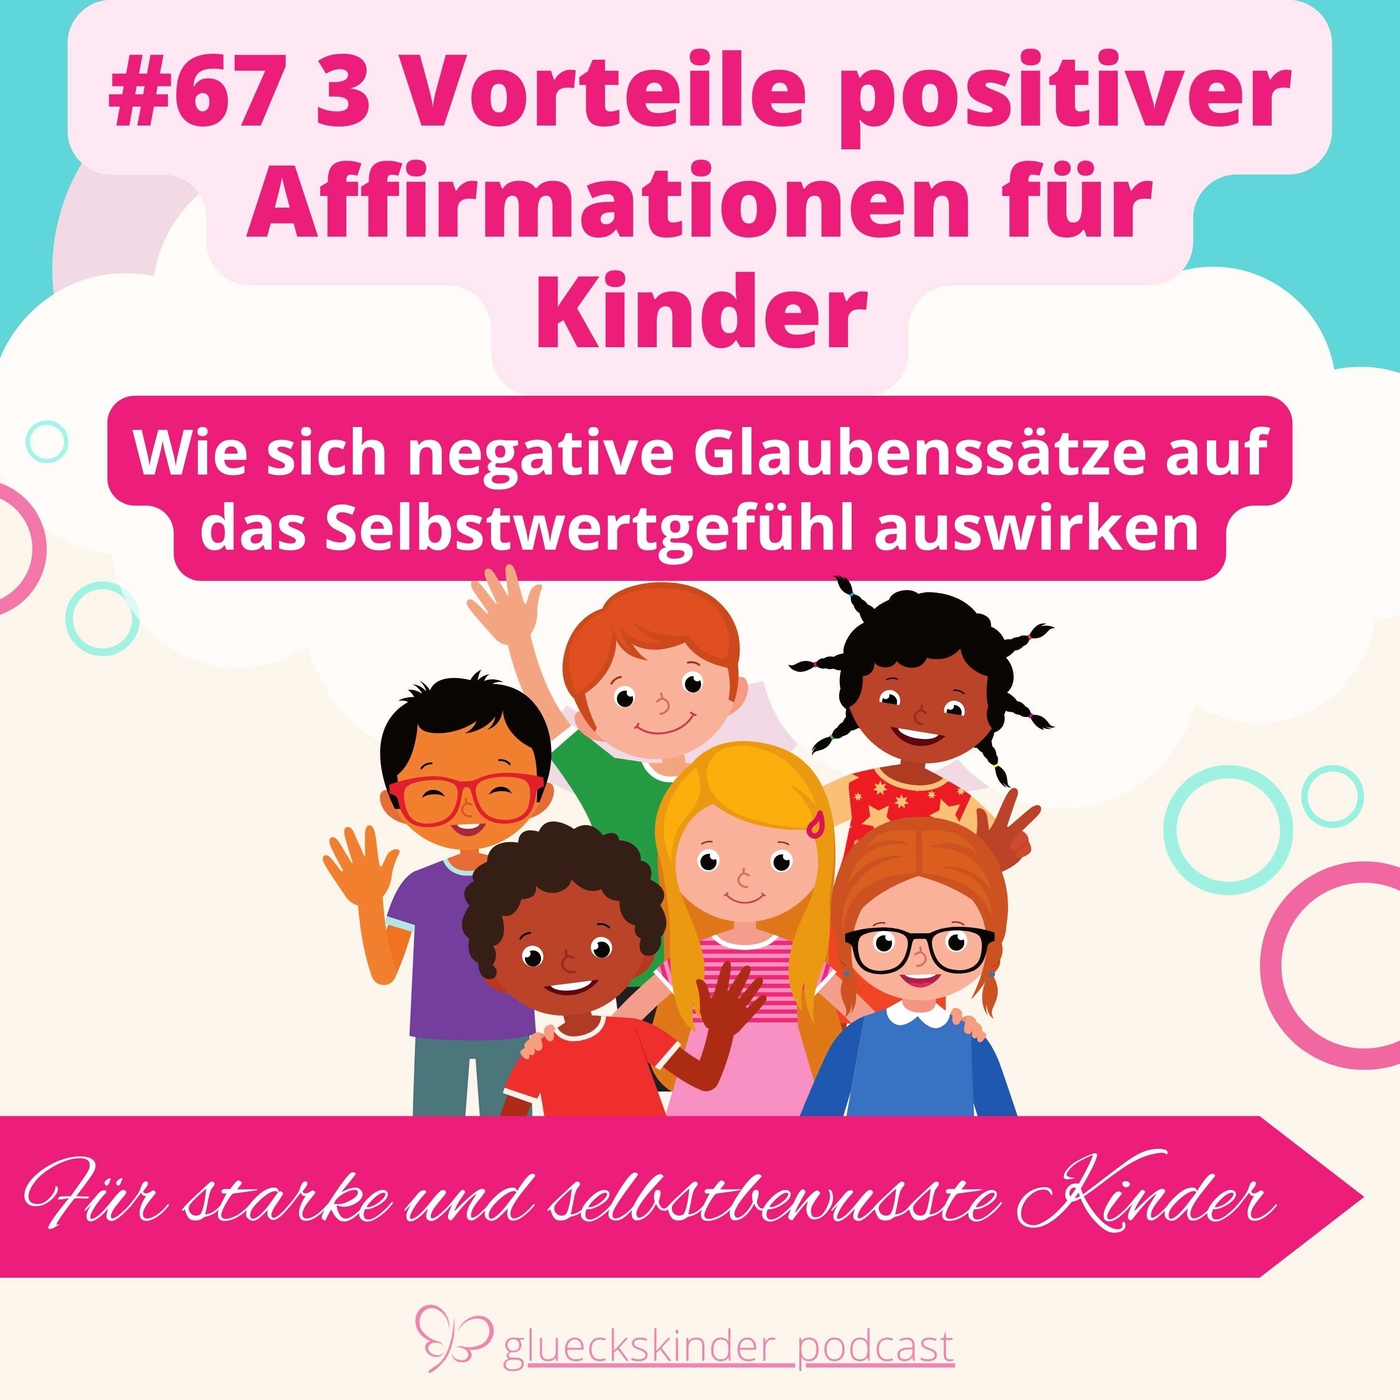 #67 3 Vorteile positiver Affirmationen für Kinder